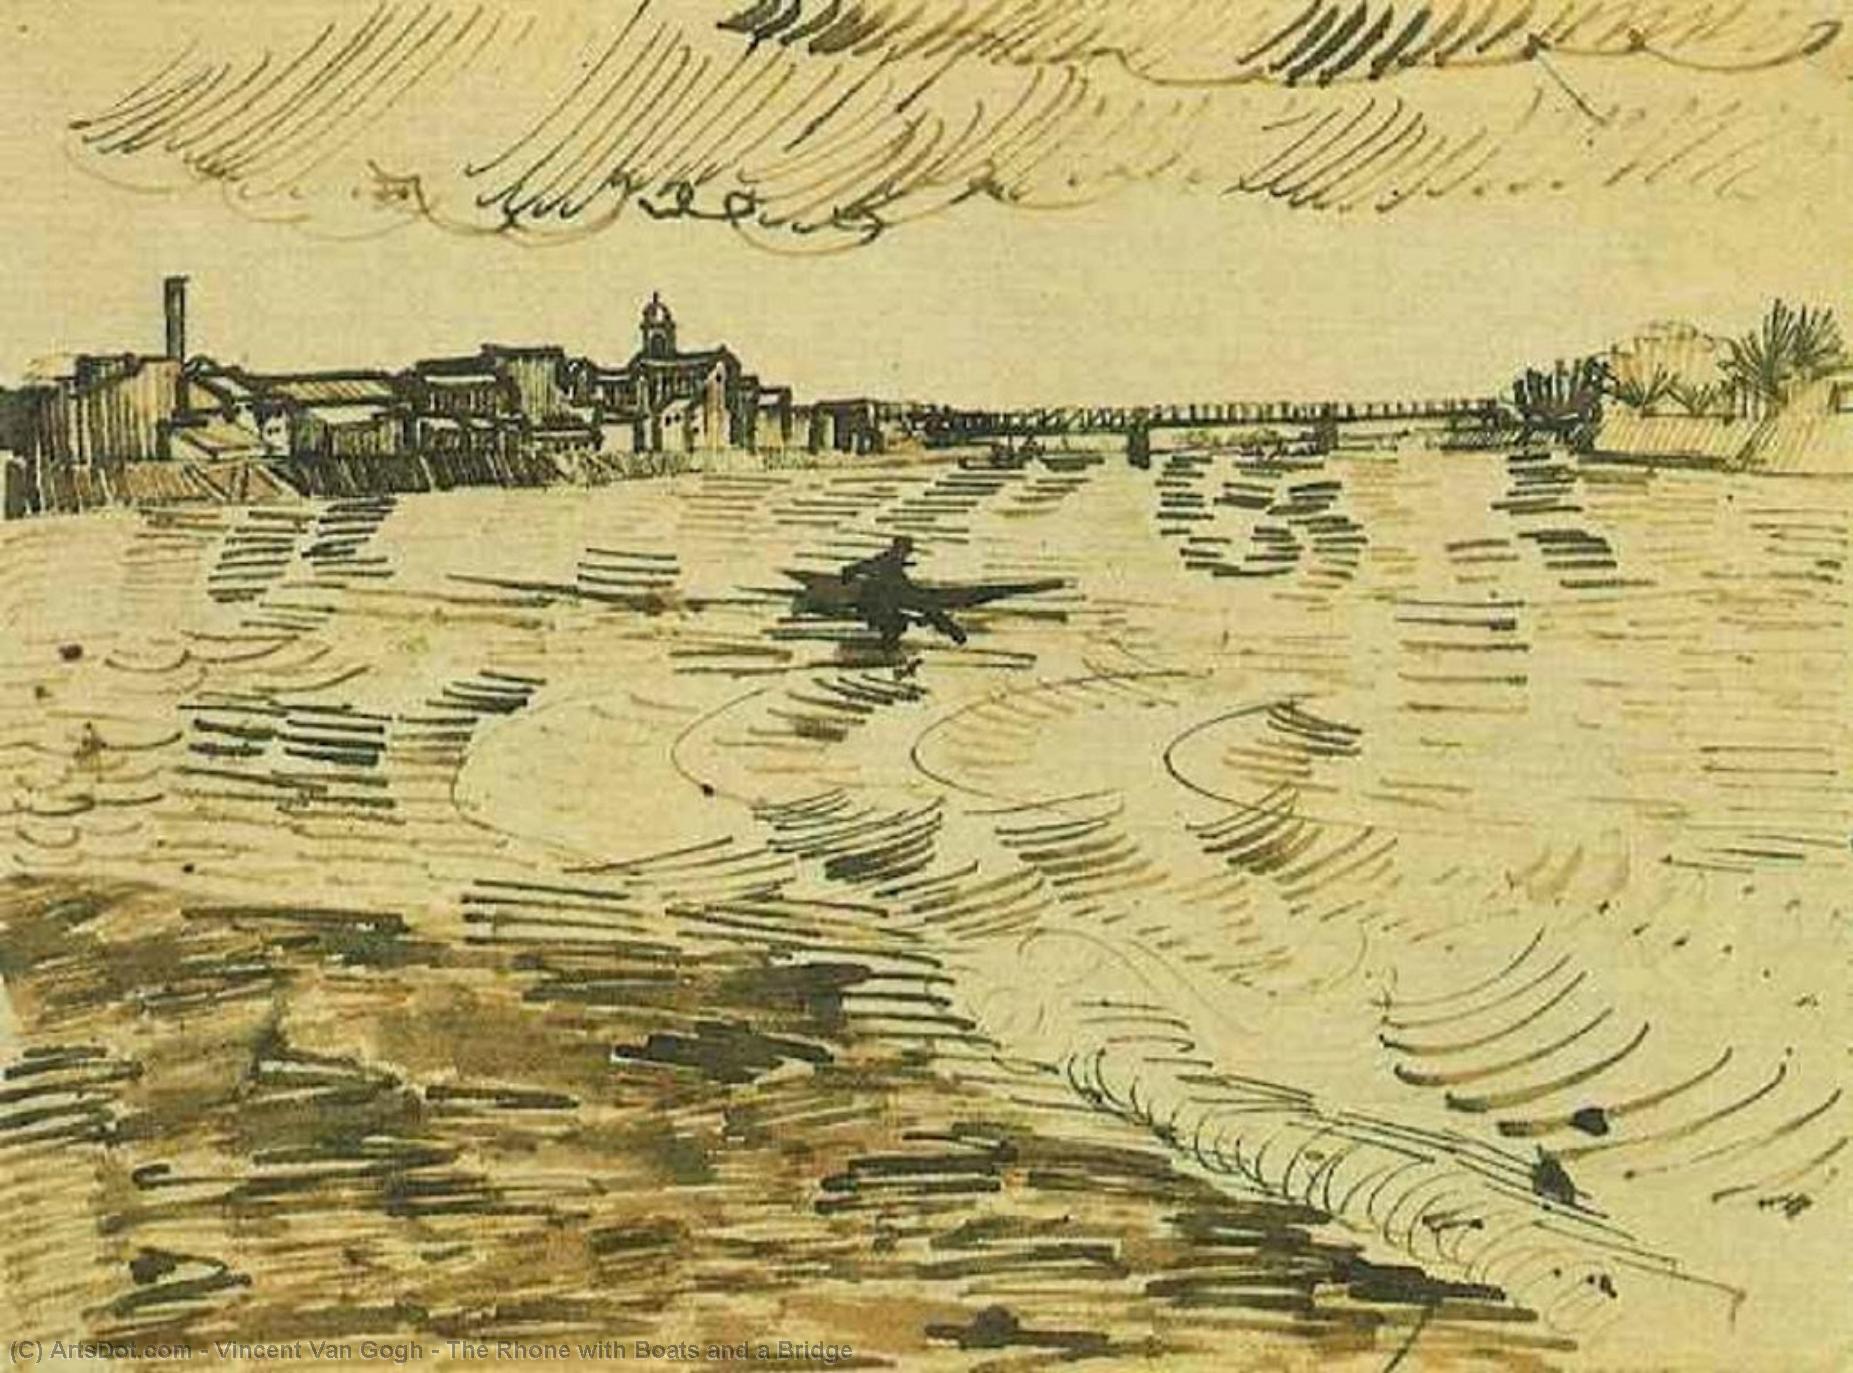 WikiOO.org - Енциклопедия за изящни изкуства - Живопис, Произведения на изкуството Vincent Van Gogh - The Rhone with Boats and a Bridge